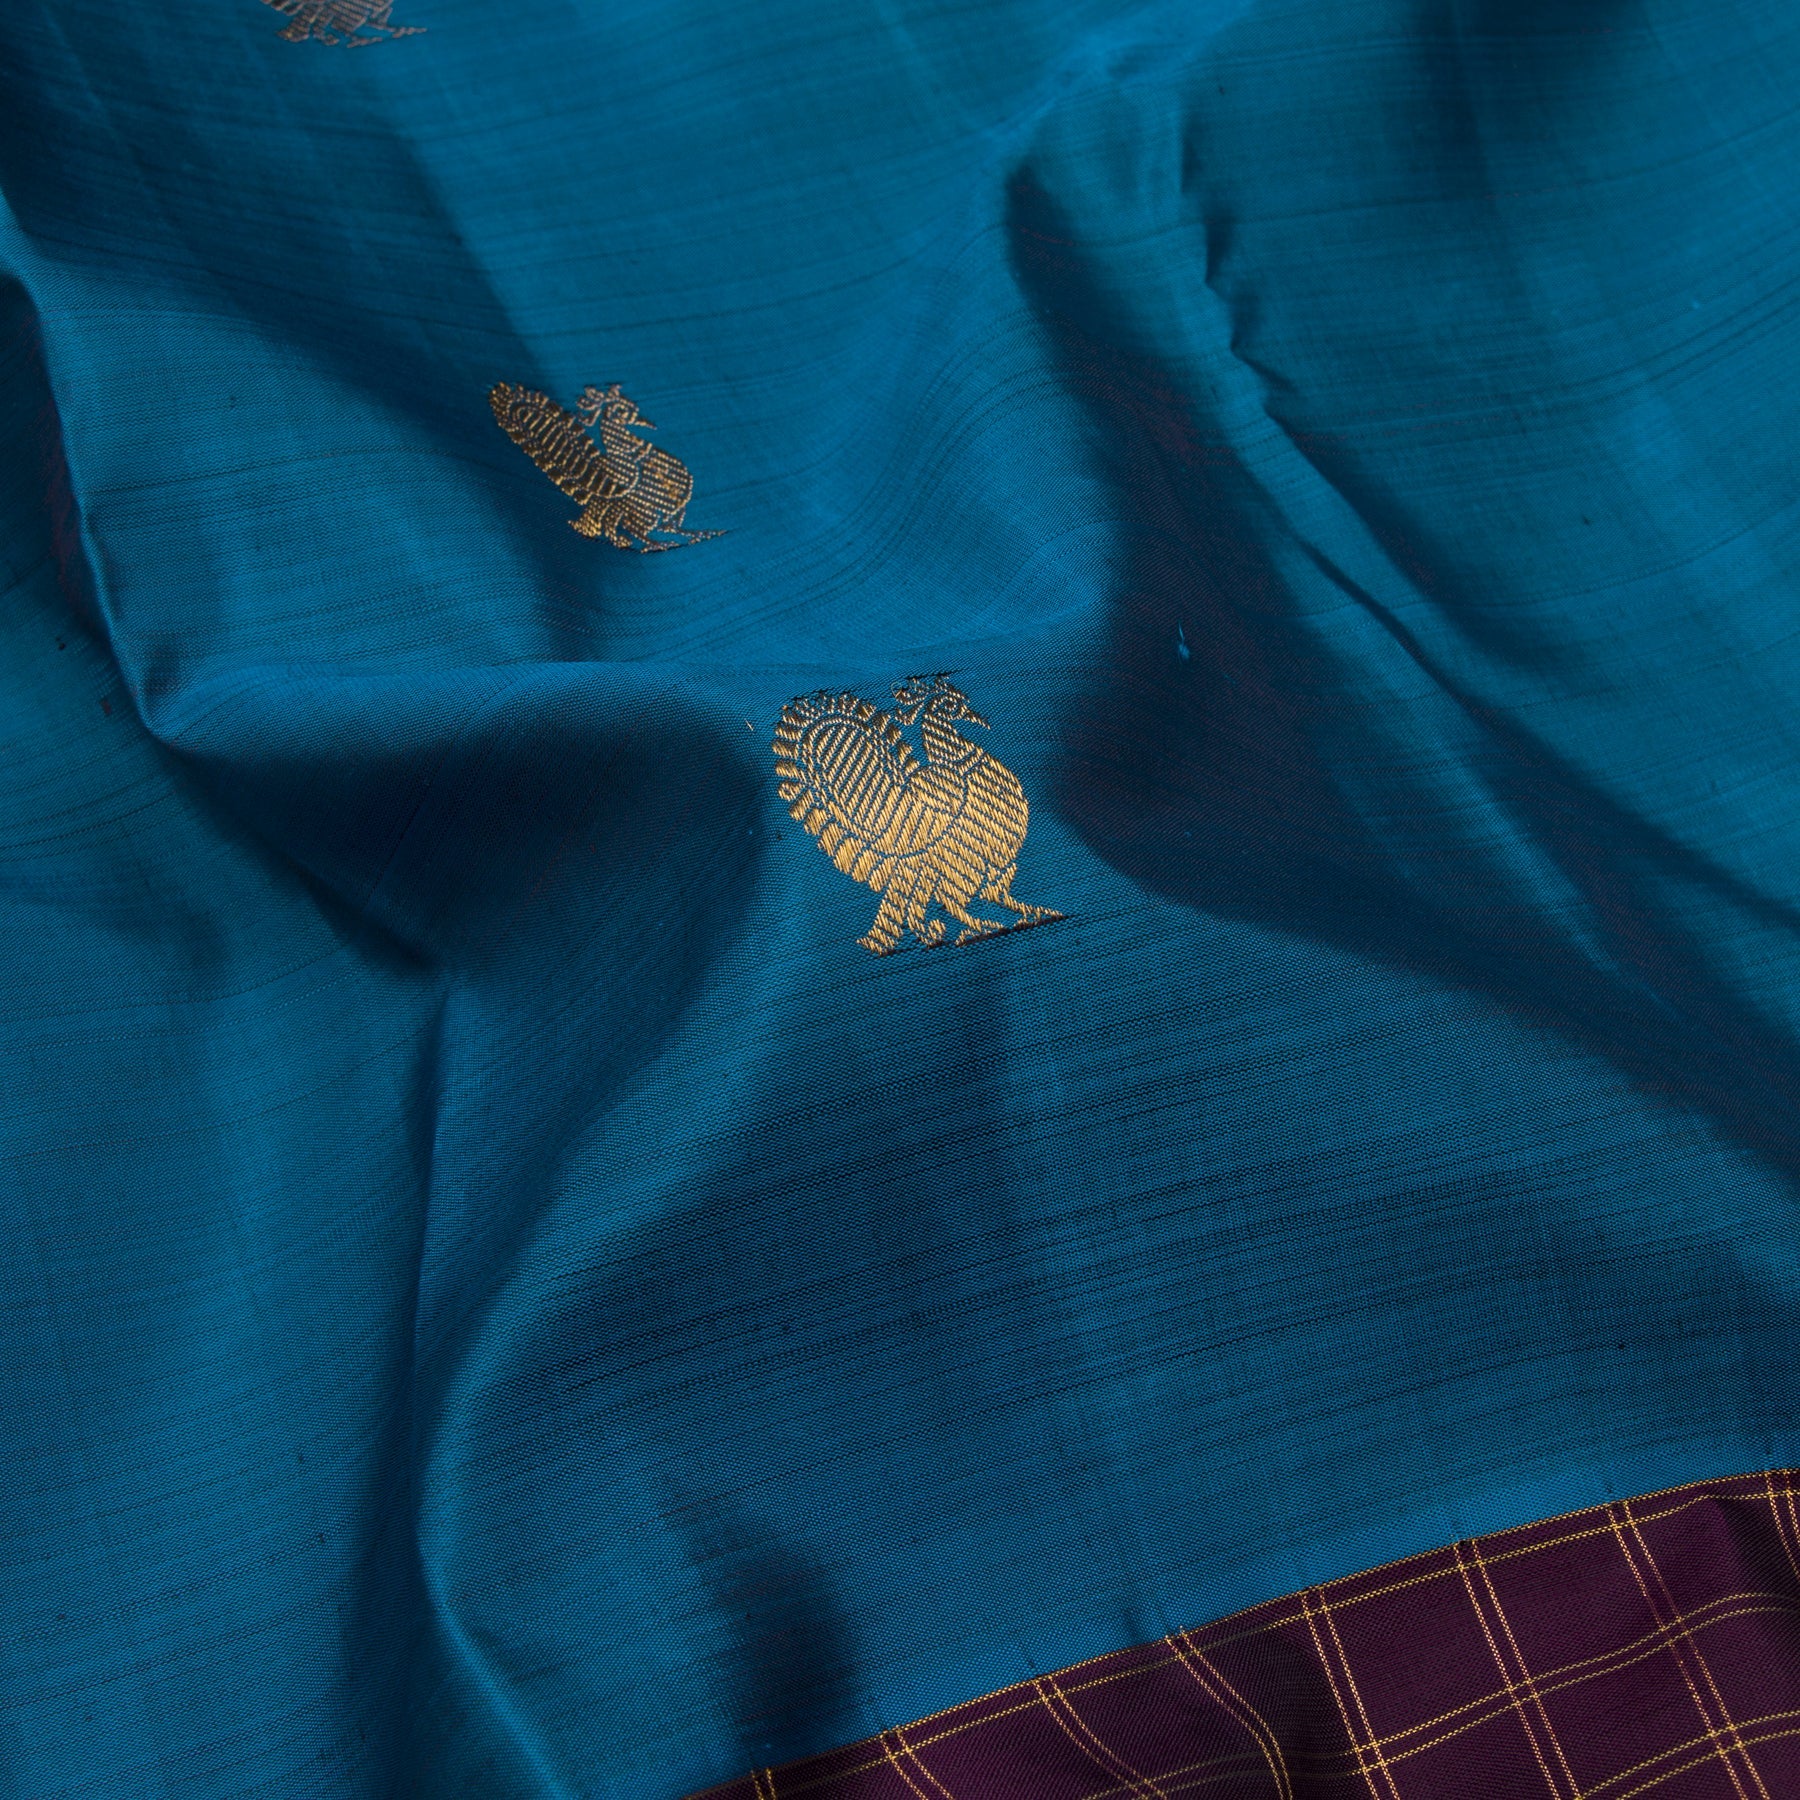 Kanakavalli Kanjivaram Silk Sari 23-595-HS001-11366 - Fabric View